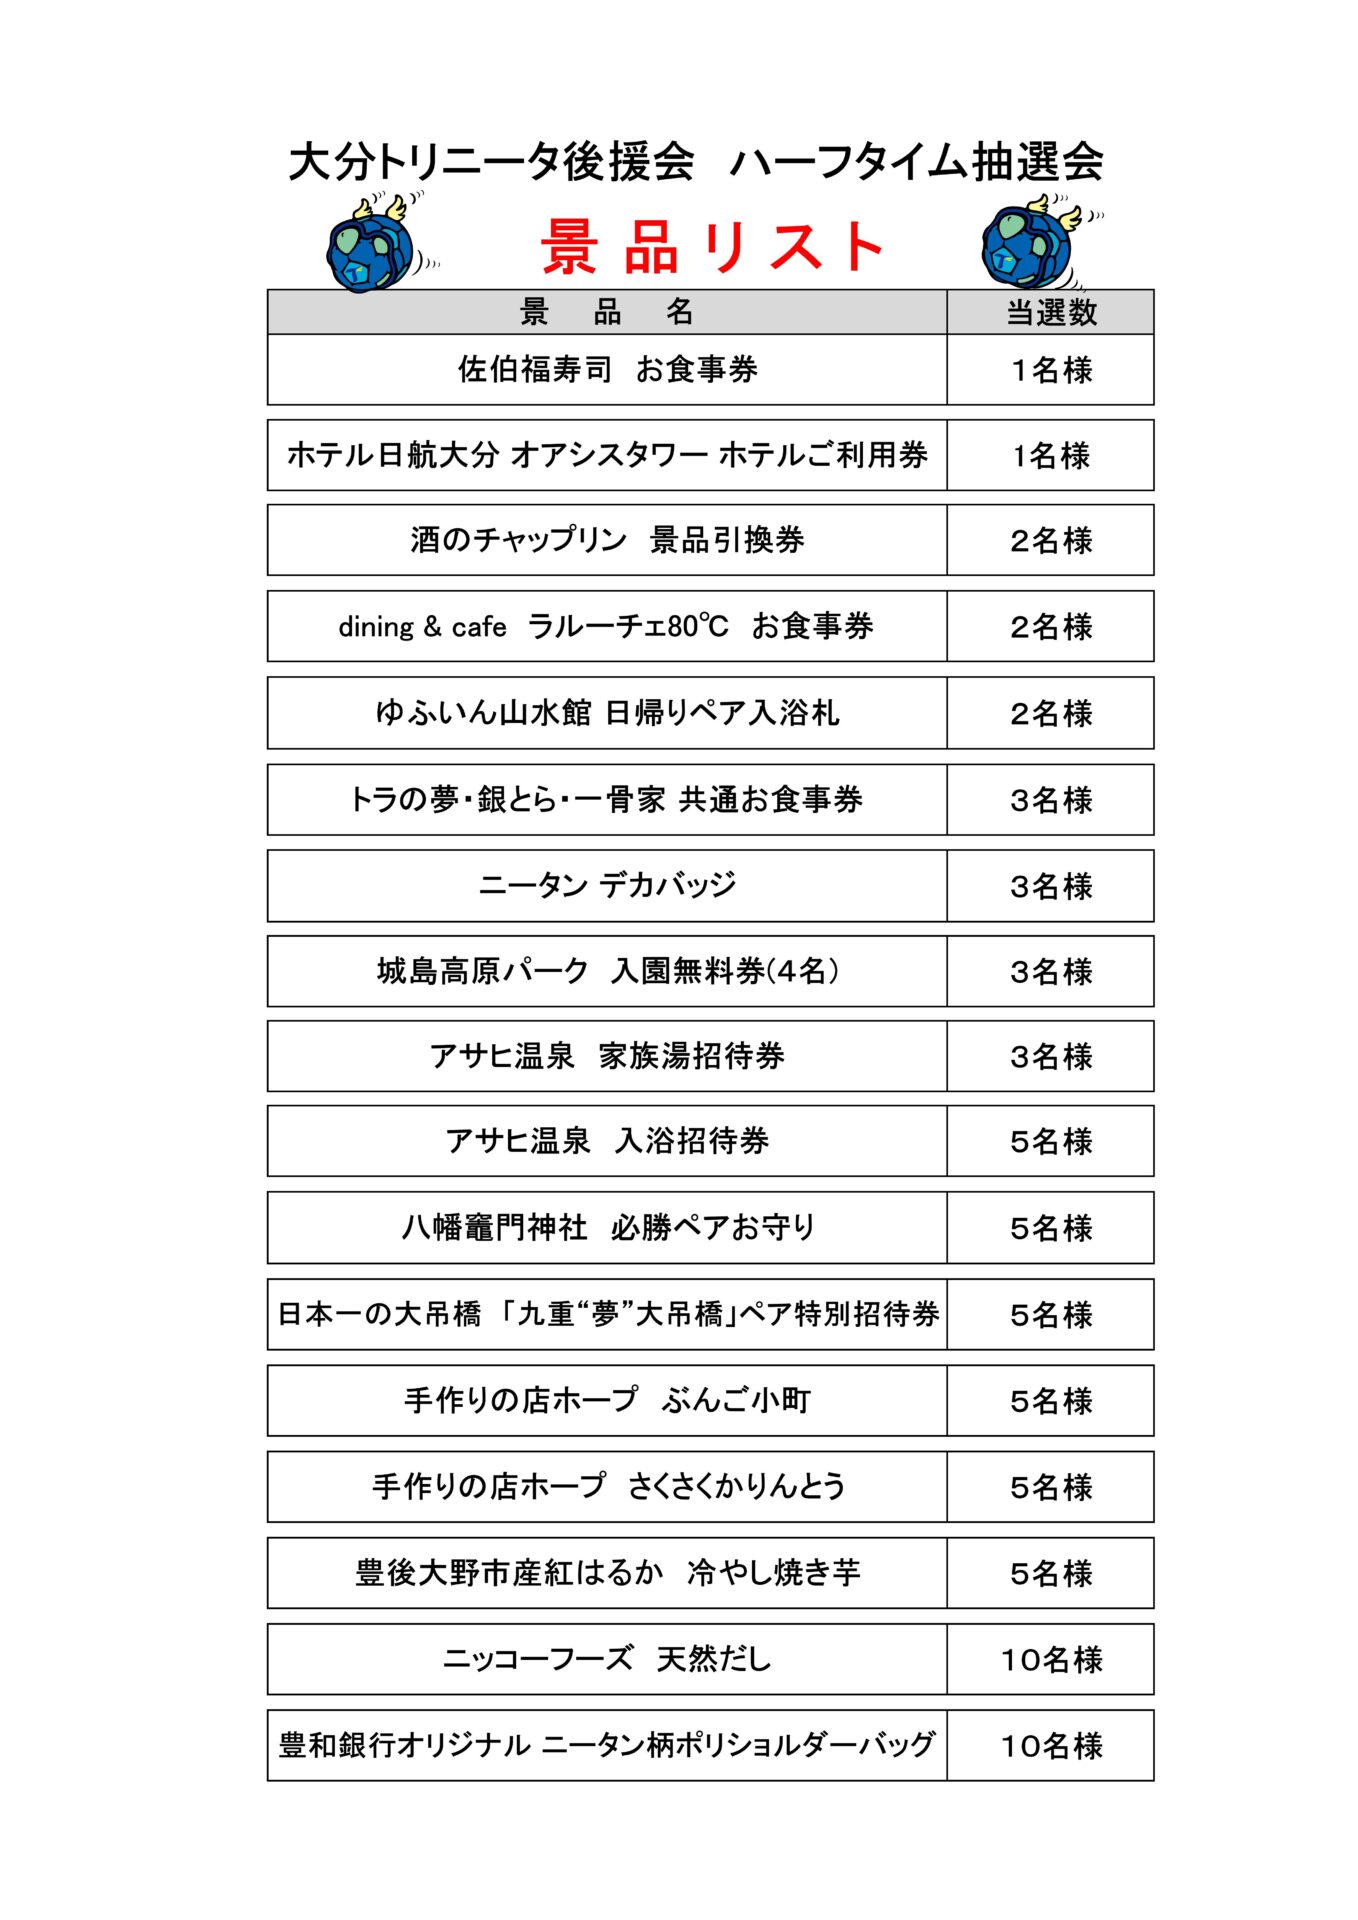 7/22(土) いわきFC戦 ハーフタイム抽選会のお知らせ